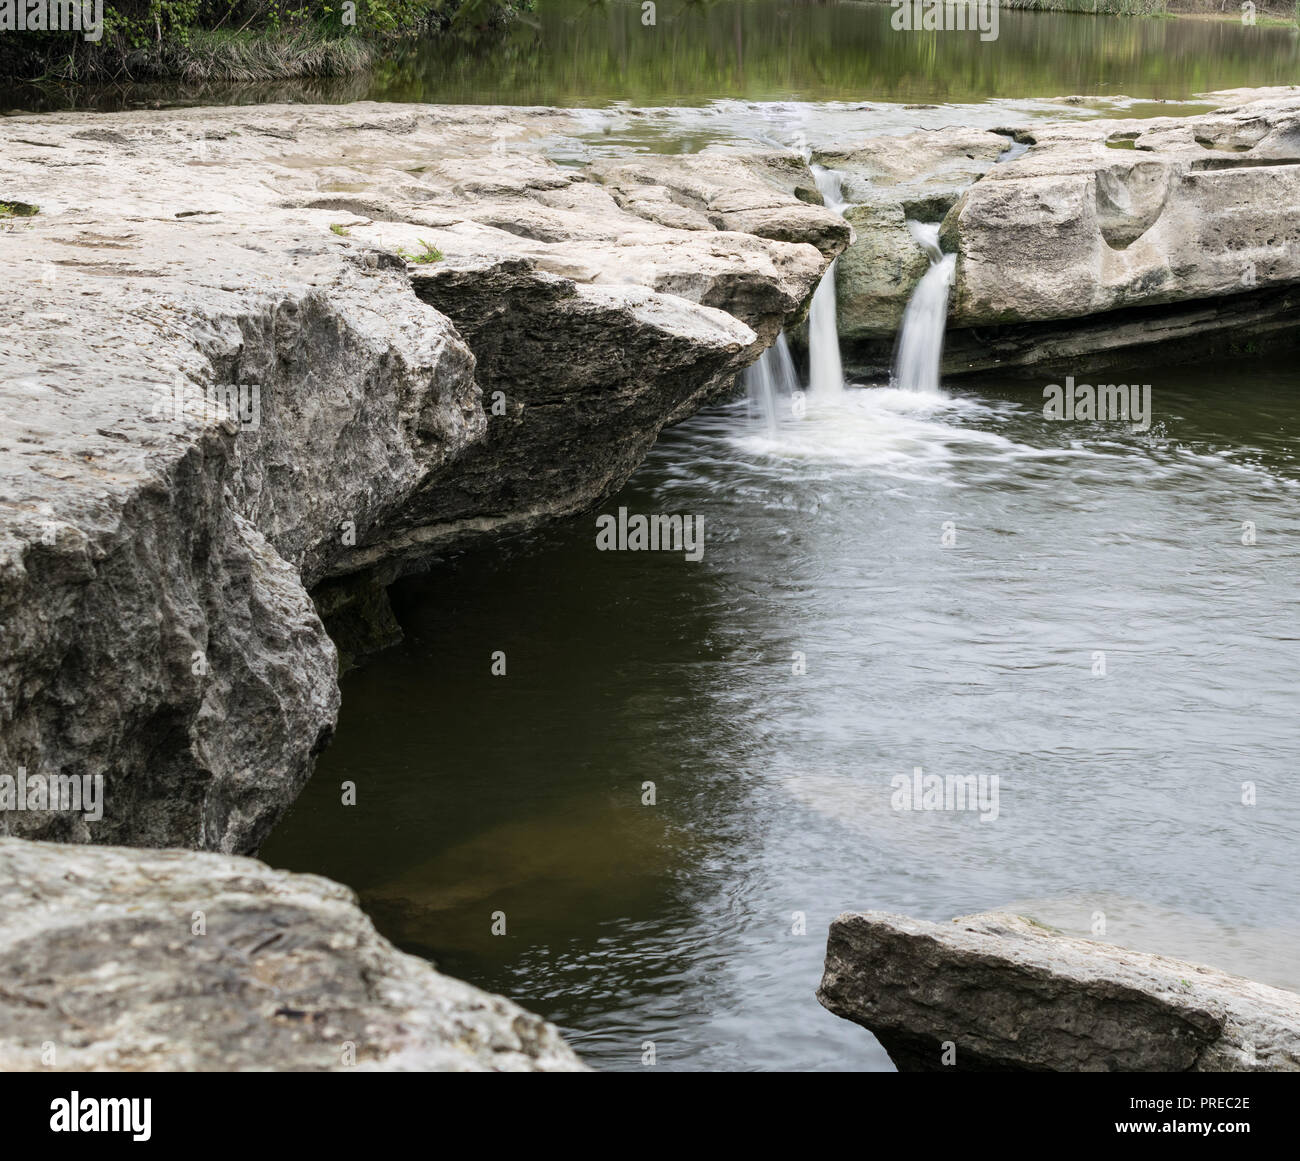 Les eaux du ruisseau de l'oignon sur l'écrasement des McKinney Falls dans un magnifique oasis naturelle et situé à seulement quelques minutes du centre-ville d'Austin, Texas. Banque D'Images